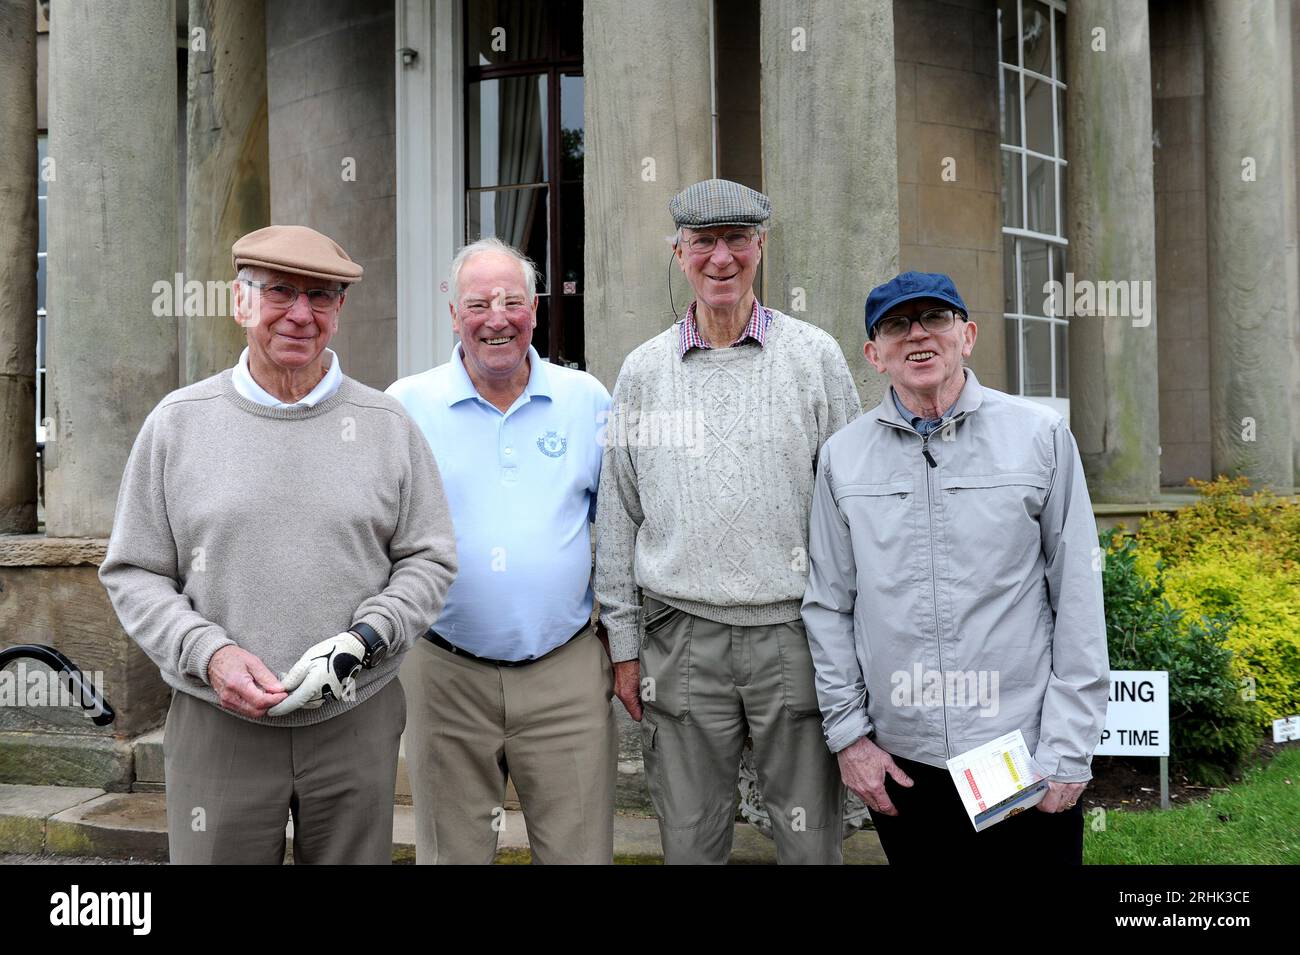 Douze des vainqueurs de la coupe du monde en Angleterre en 1966 ont été réunis sur le parcours de golf Brockton Hall dans le Staffordshire aujourd'hui. Sir Bobby Charlton, Ron Flowers, Gordon Banks, George Eastham. Banque D'Images